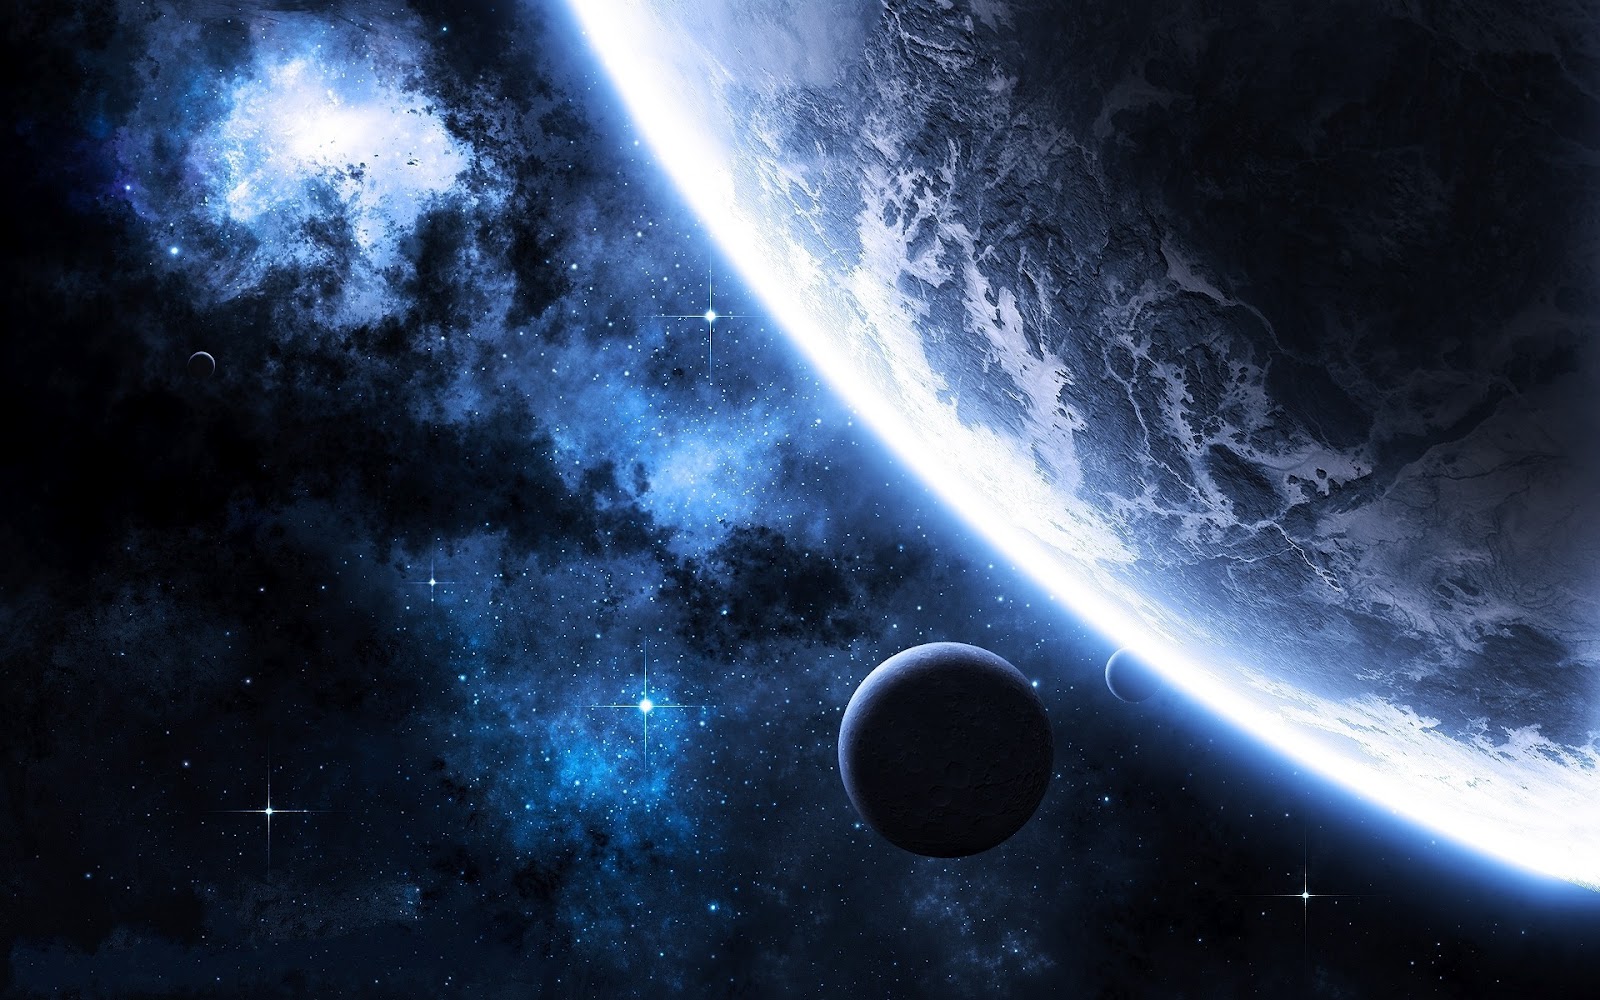 sfondi spaziali ad alta definizione,spazio,pianeta,atmosfera,oggetto astronomico,universo